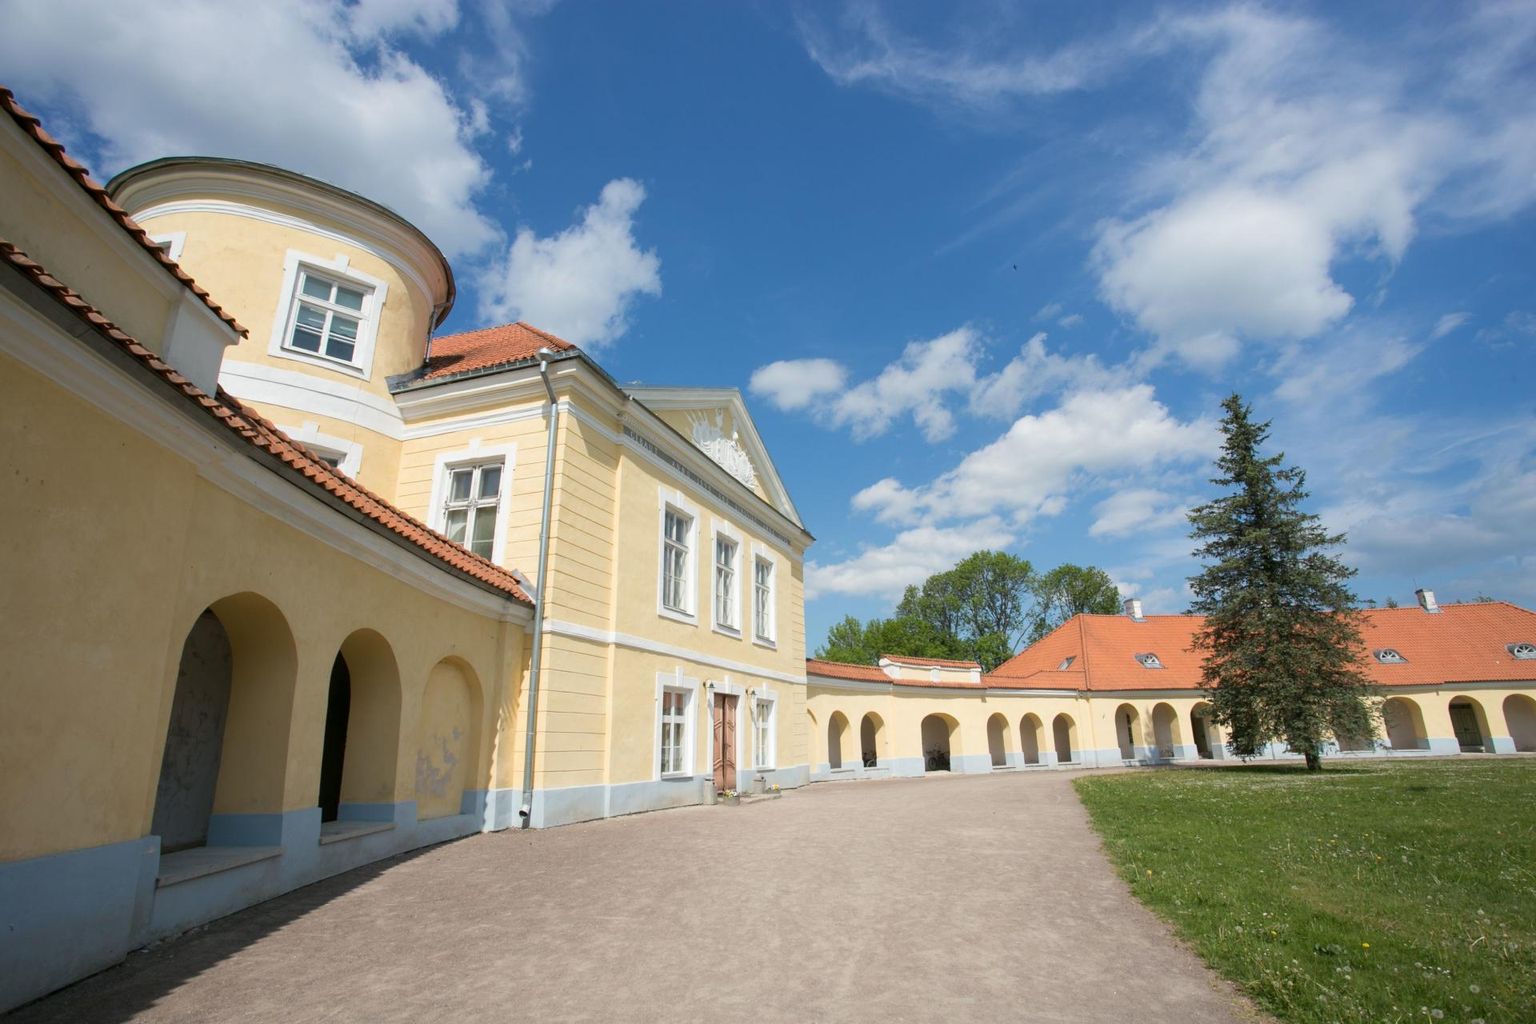 Mitu festivali Ööbikuööd ettevõtmist leiab ased Kiltsi mõisas ja pargis.

 